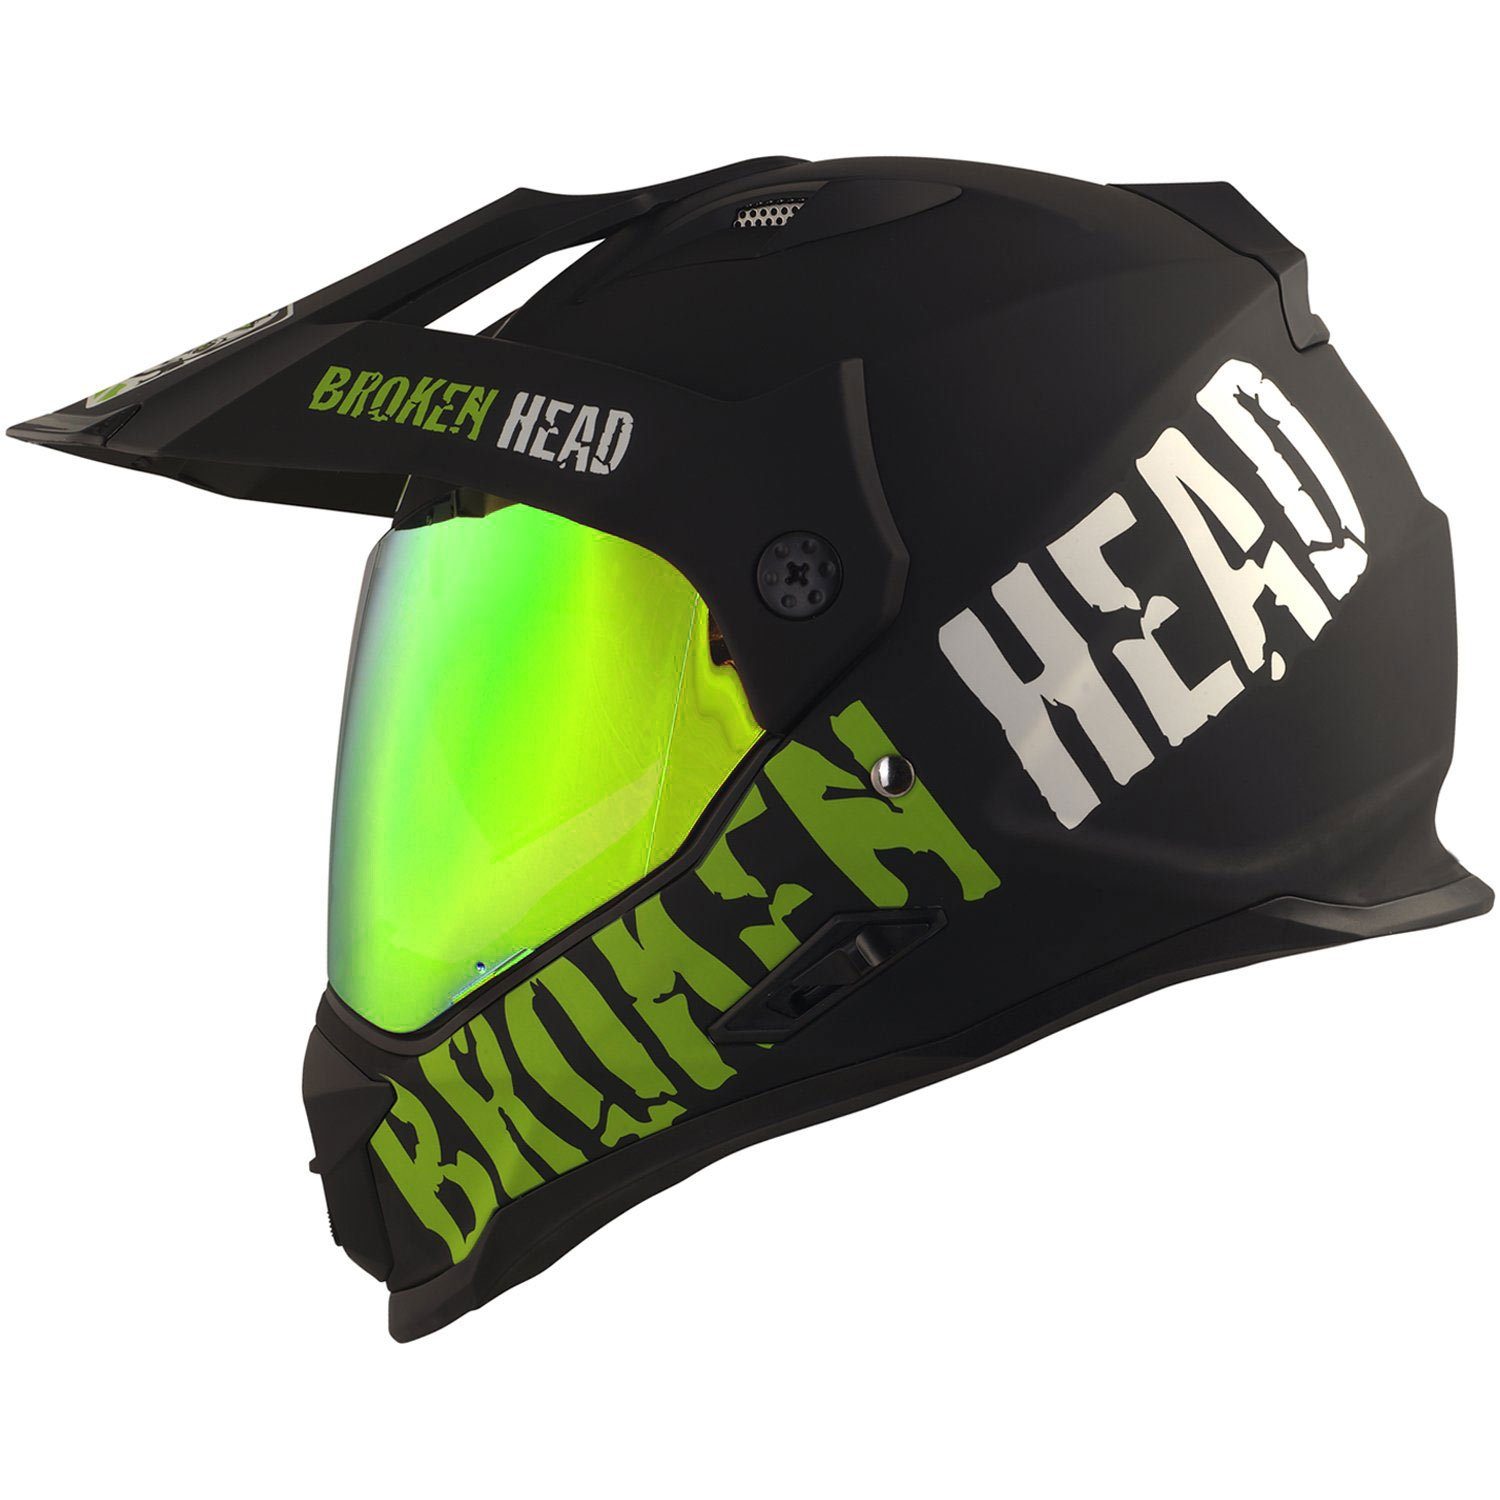 Broken Head Motorradhelm »Made2Rebel grün« (mit klarem und grün  verspiegeltem Visier), inklusive Sonnenblende und 2 Visieren online kaufen  | OTTO